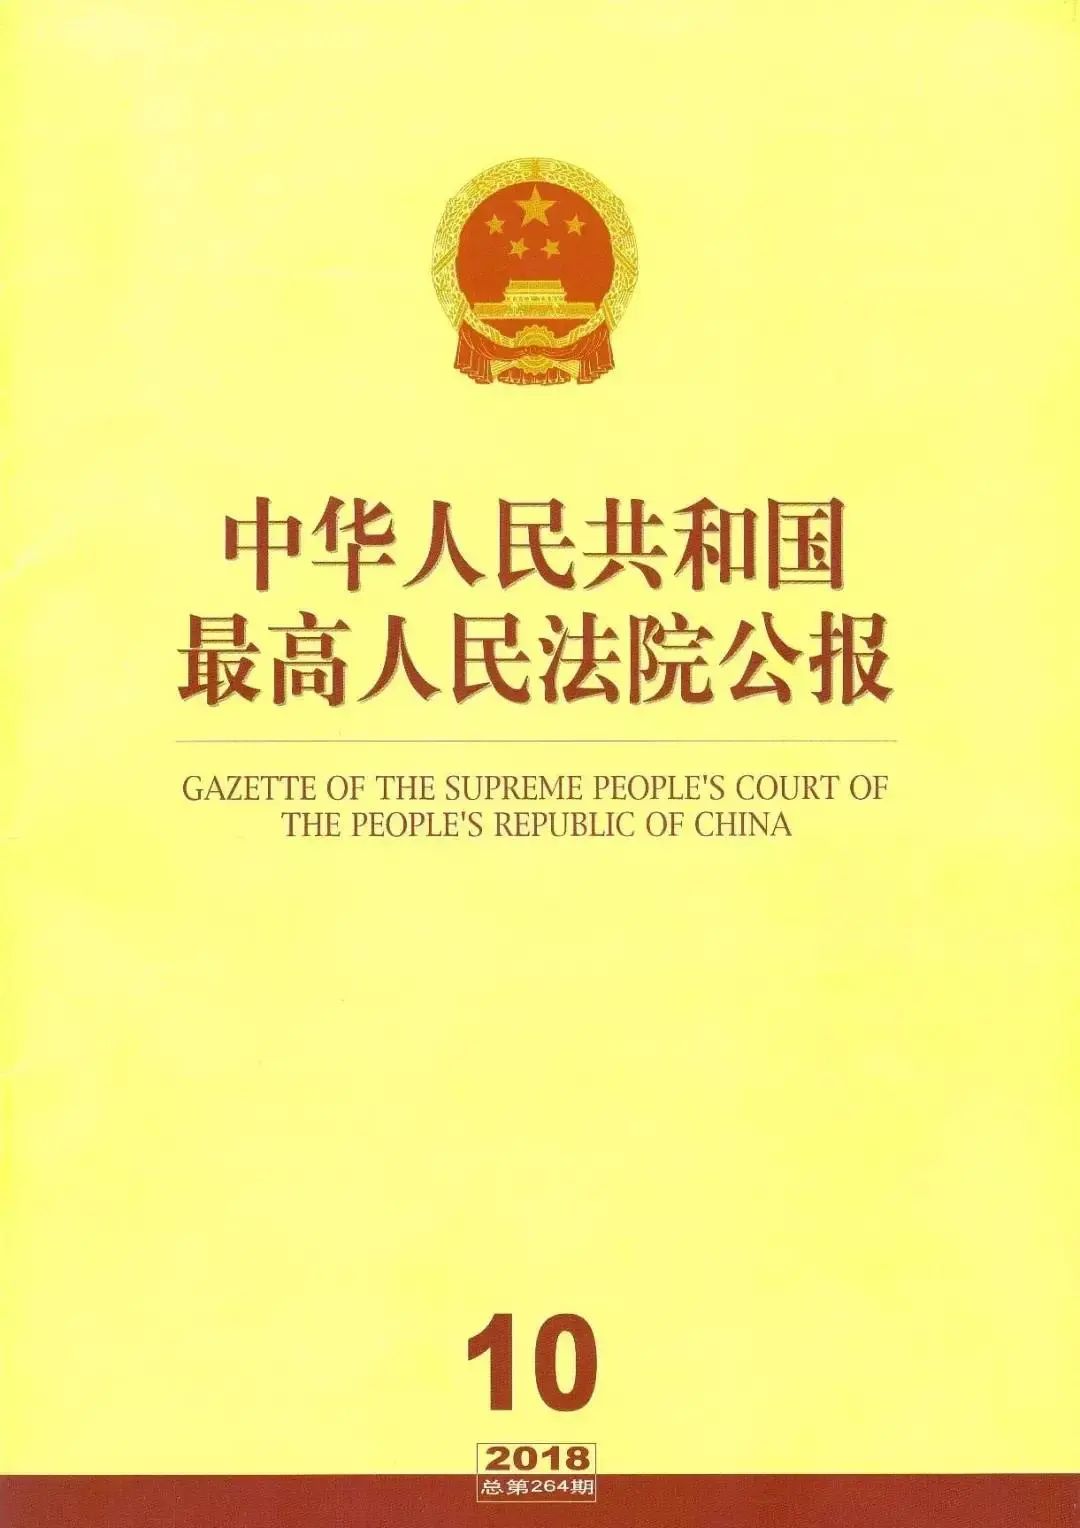 上海浦东法院涉外知识产权司法服务保障营商环境建设白皮书及典型案例